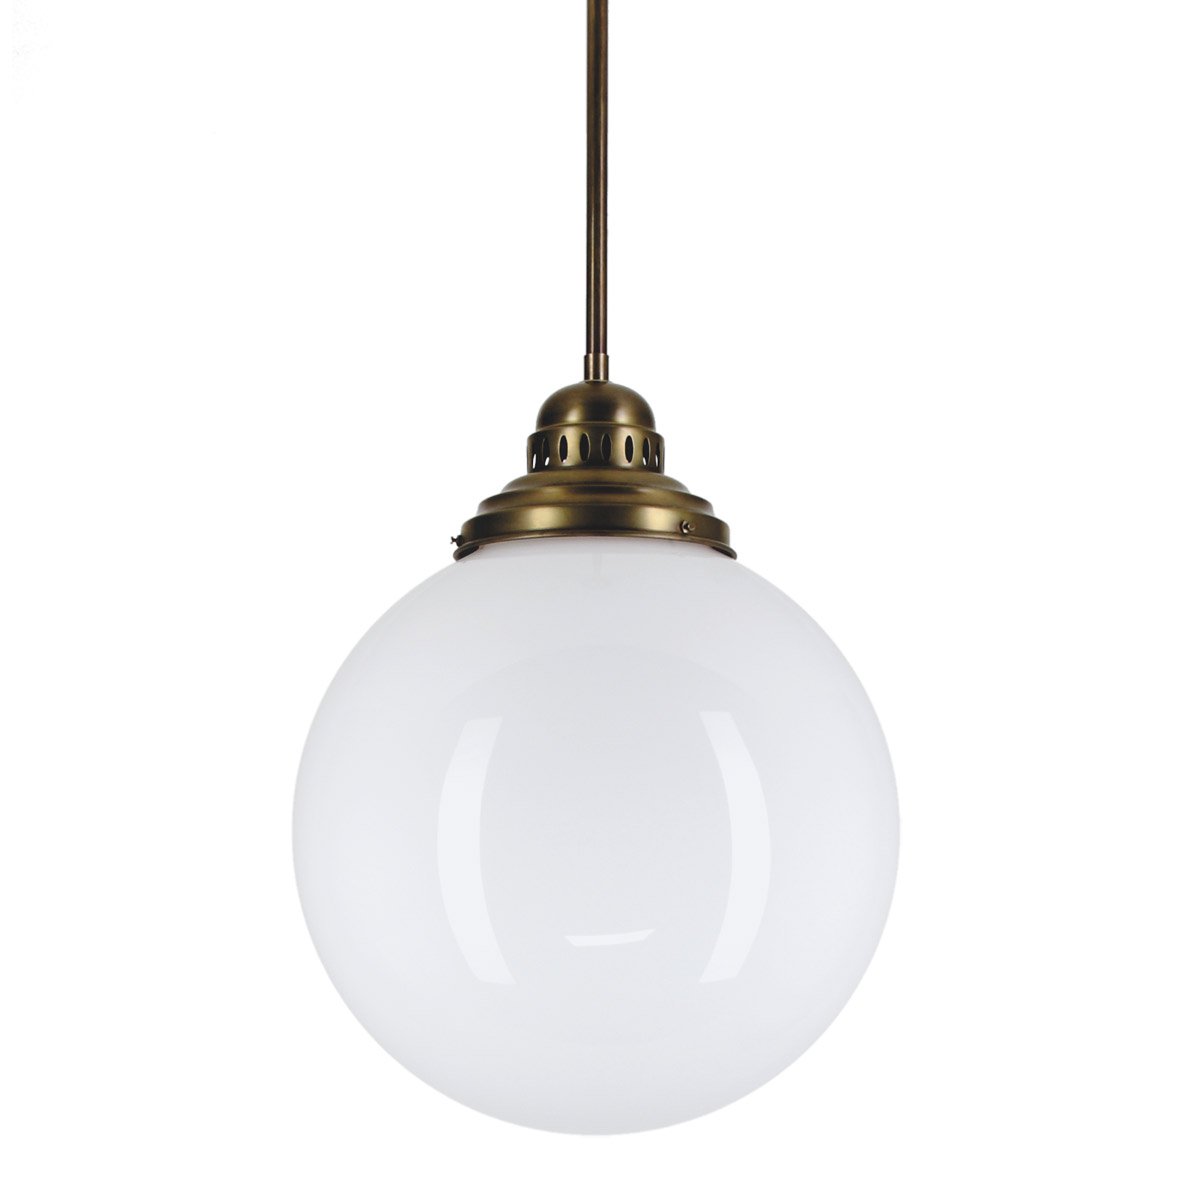 Kugellampe mit weißem Glas im Bauhaus-Design von Berliner Messinglampen